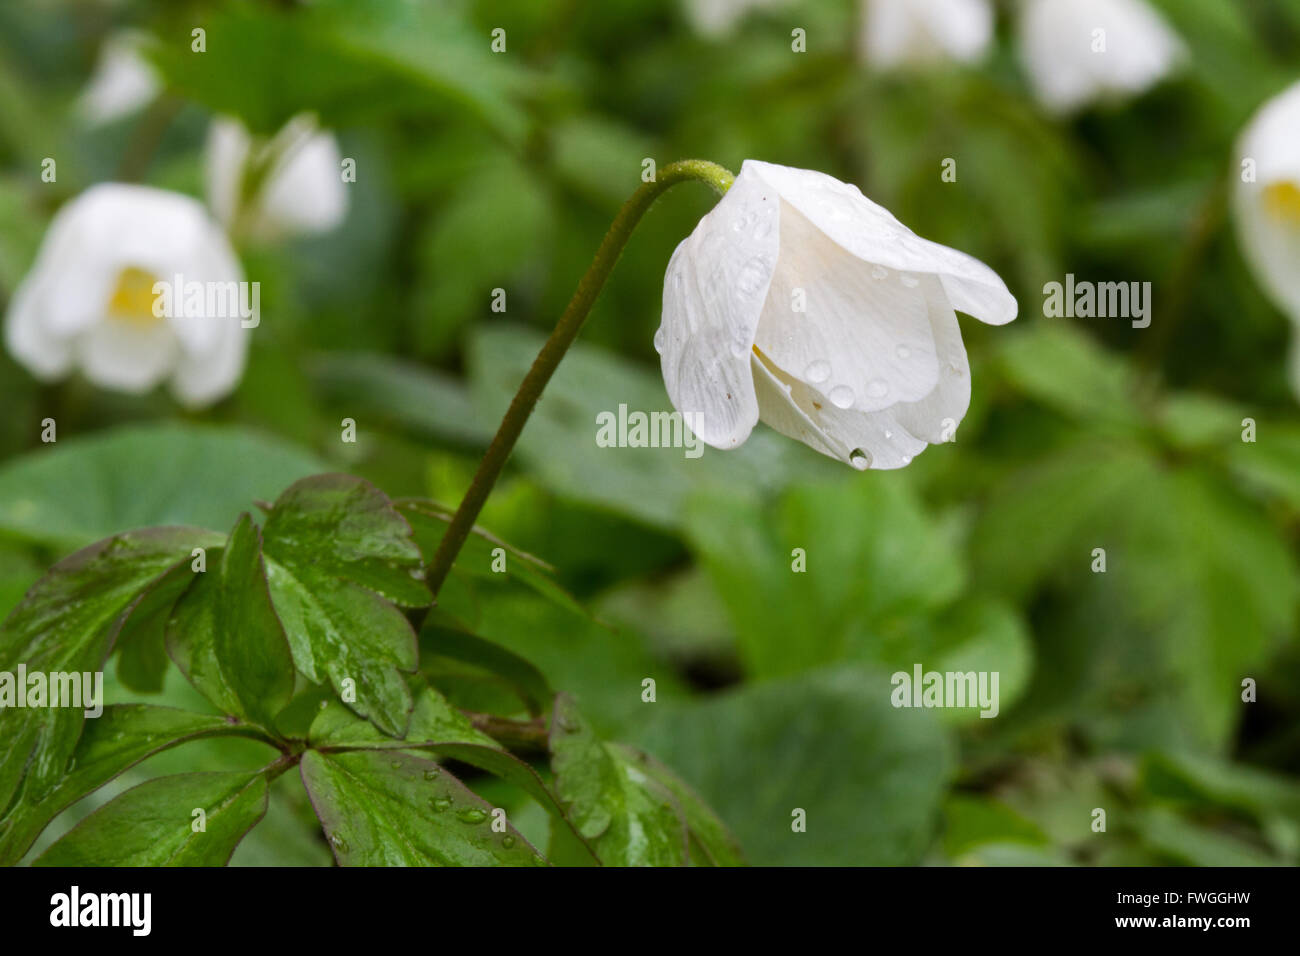 Anemoni di legno (Anemone nemorosa ,) sotto la pioggia, i fiori sono chiusi. Foto Stock